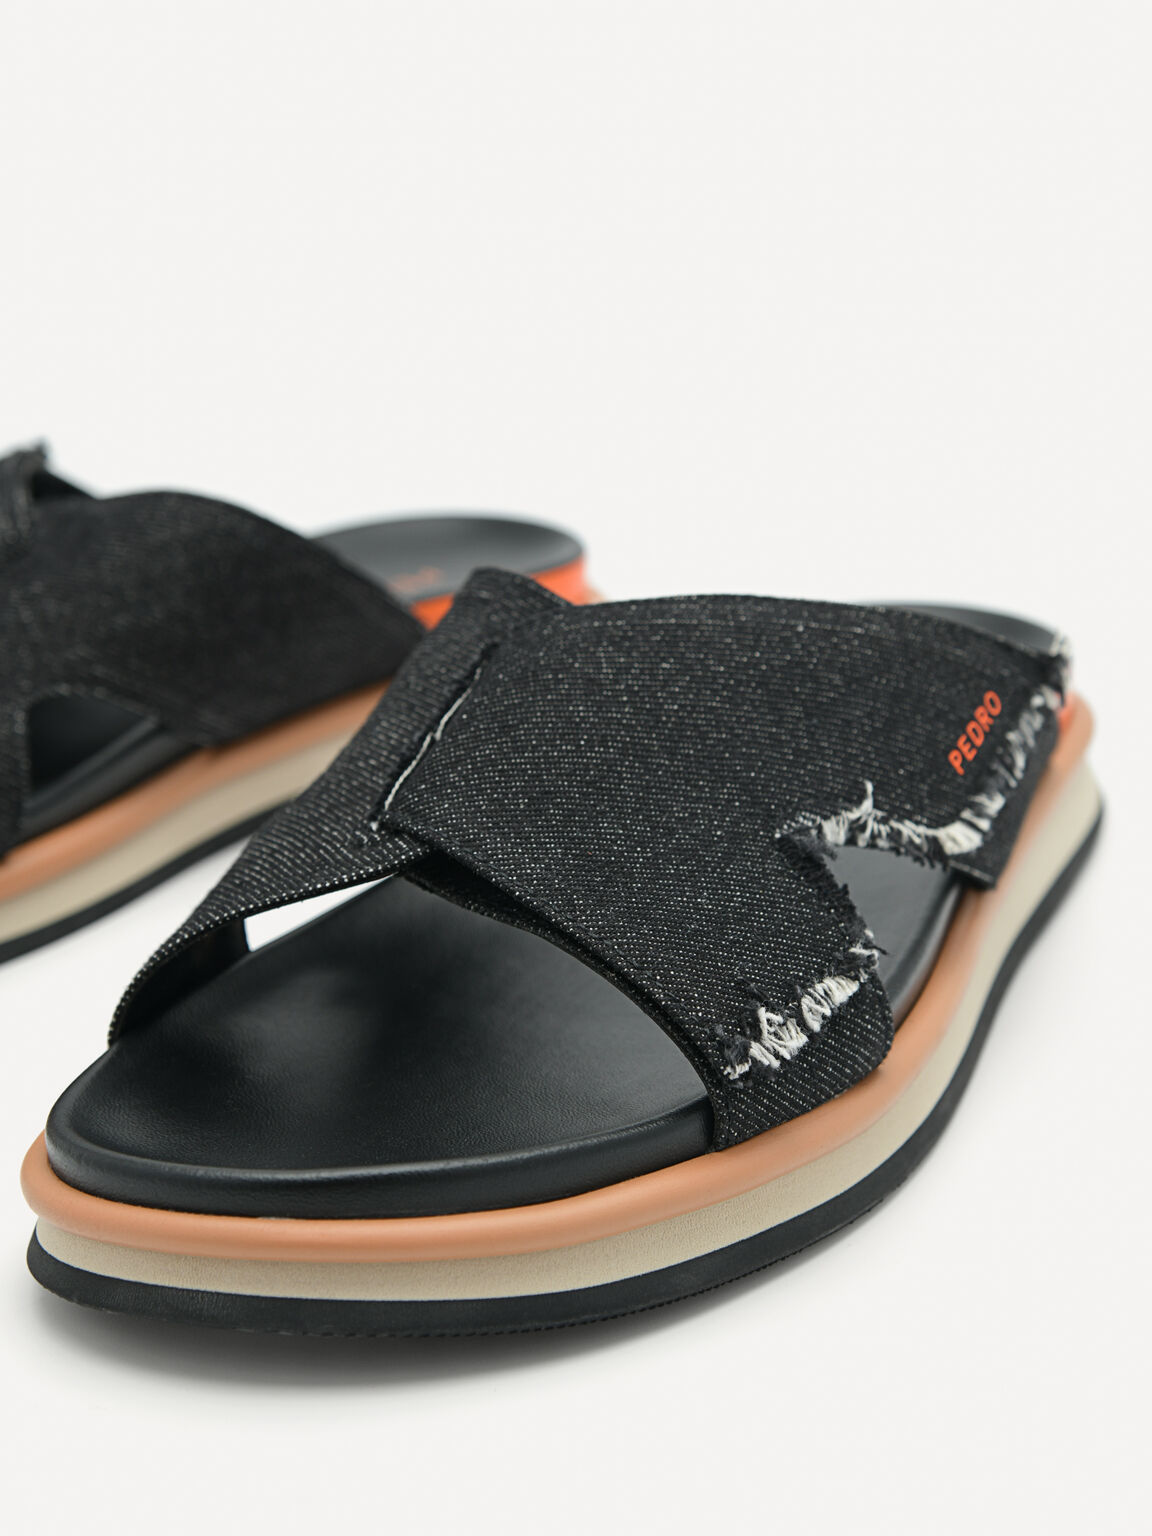 Harlin Slide Sandals, Black